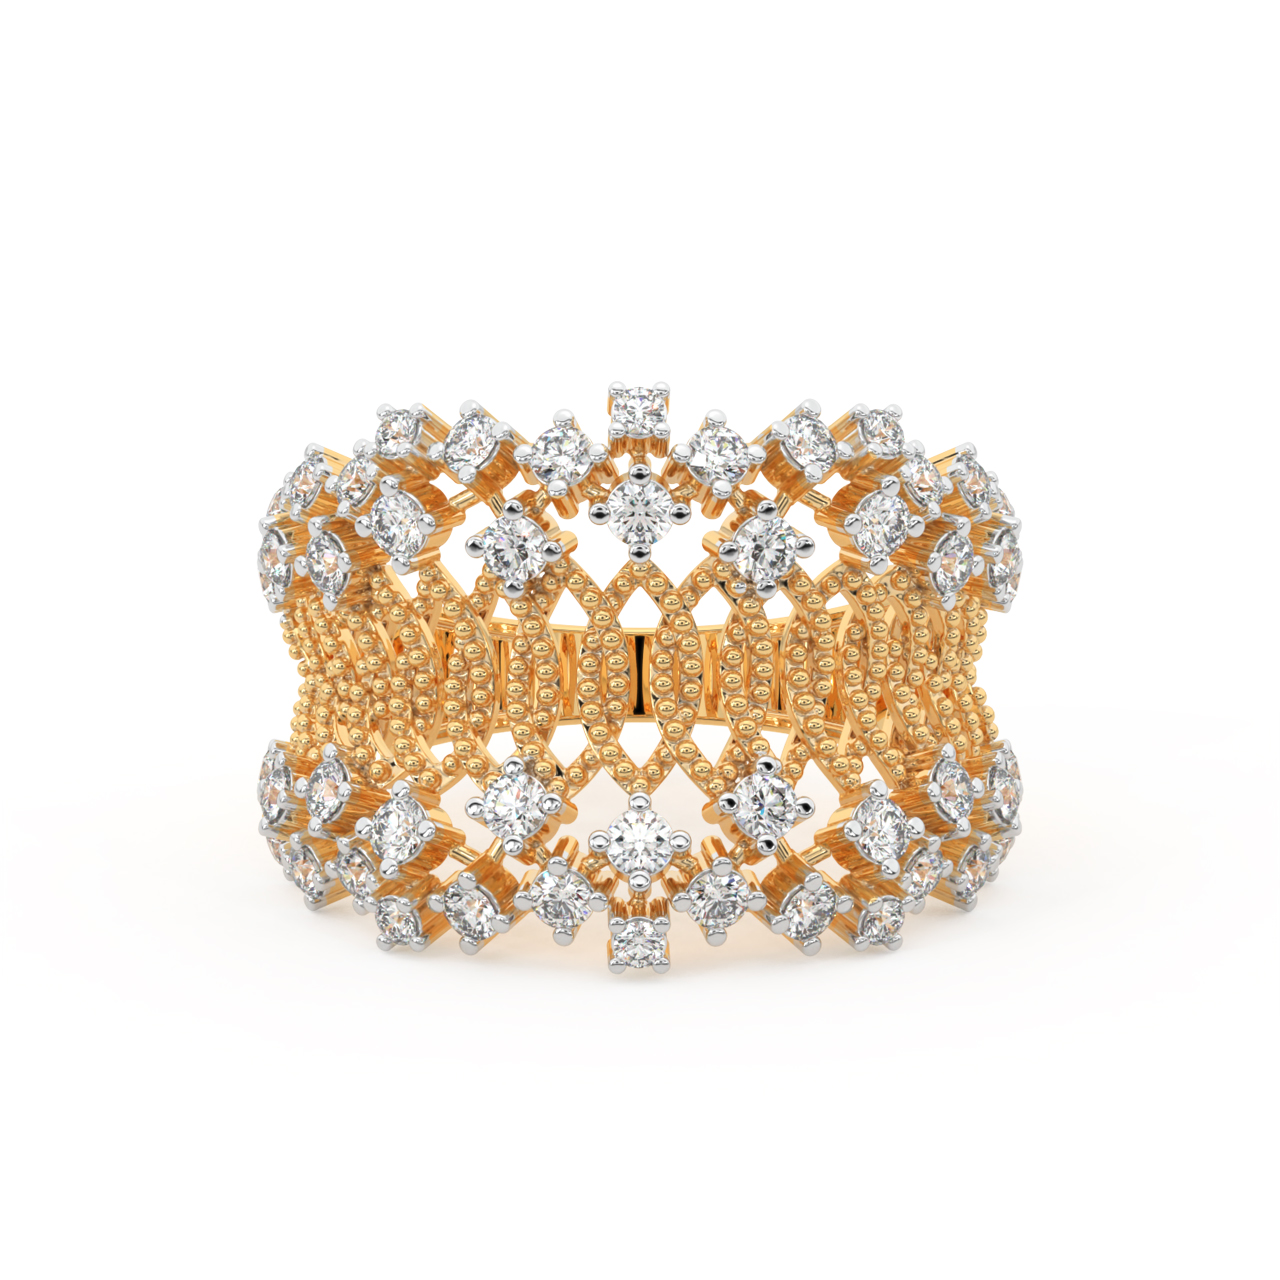 Stylish Border Diamond Engagement Ring